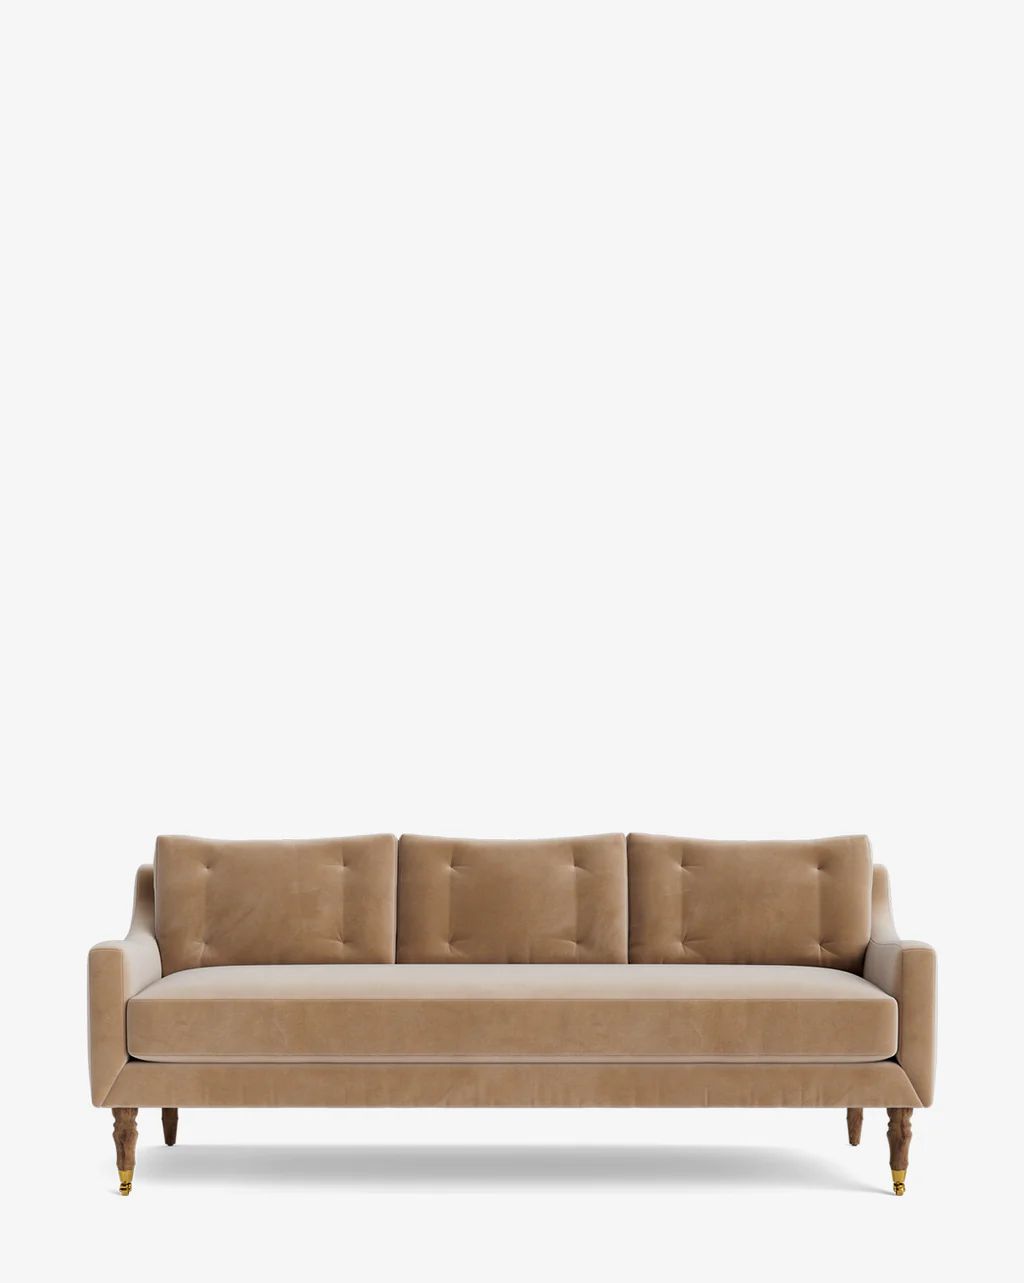 Barden Sofa | McGee & Co.